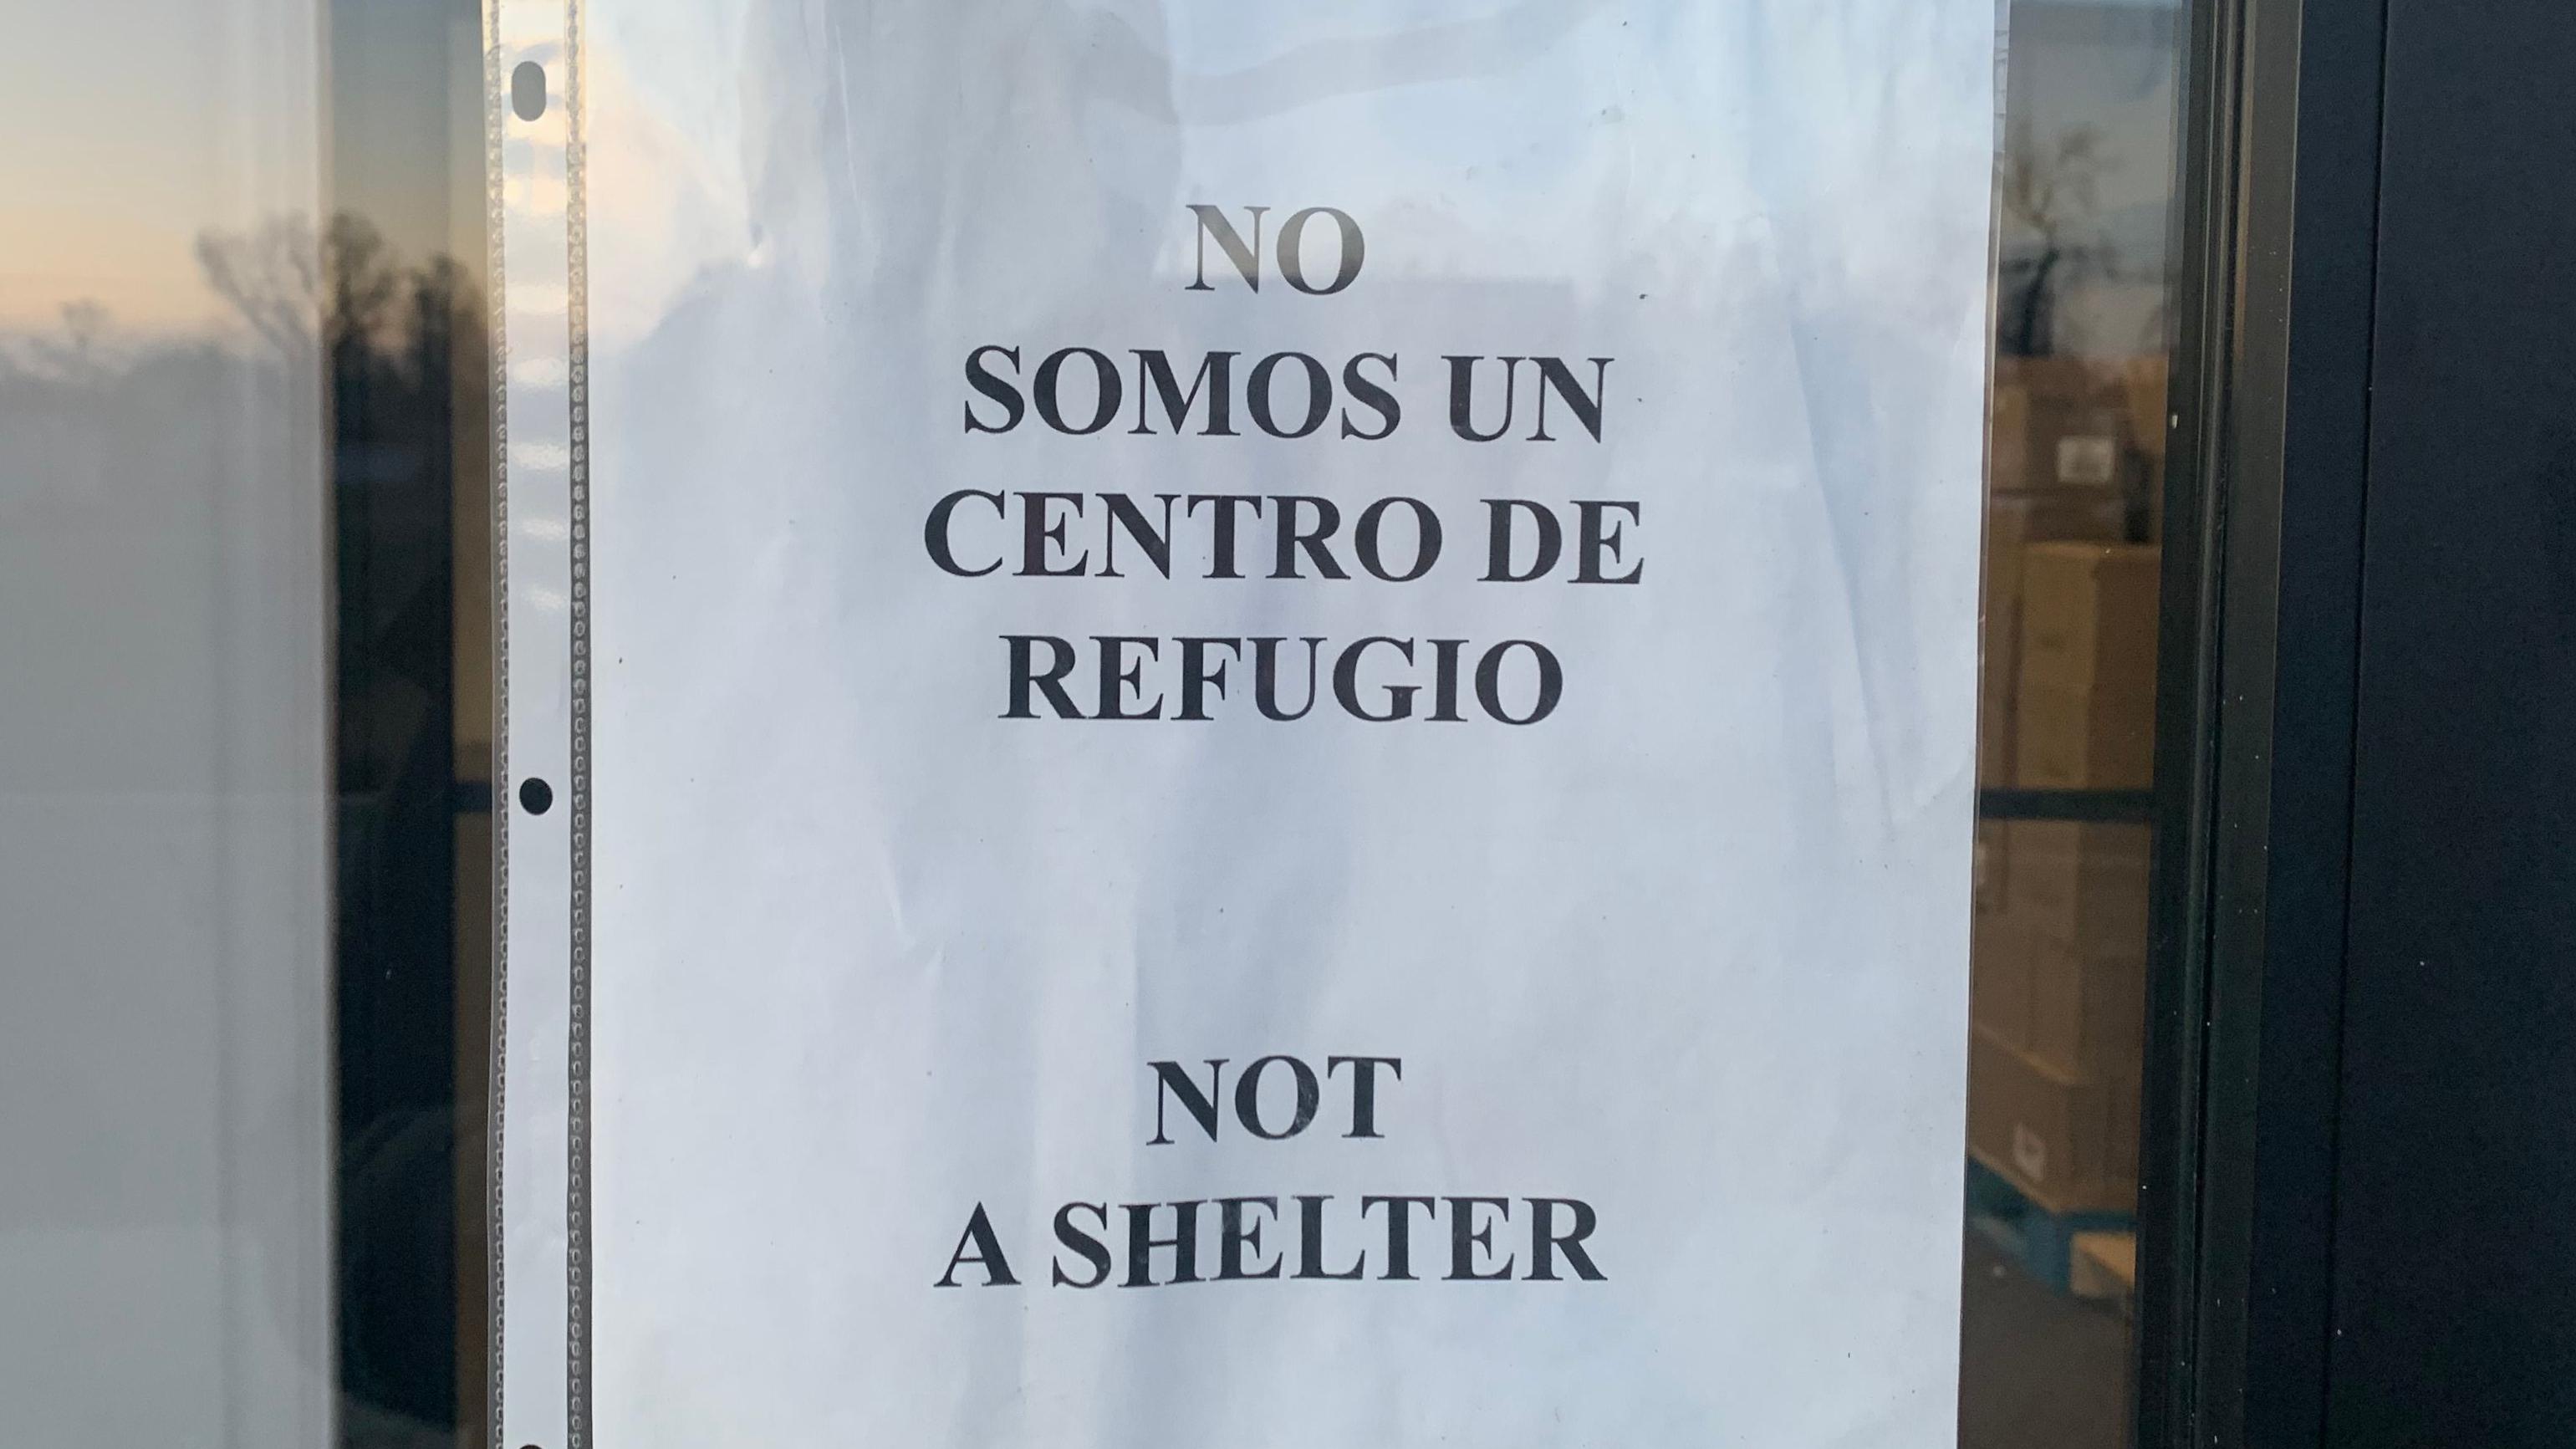 Aviso de "No somos un centro de refugio"